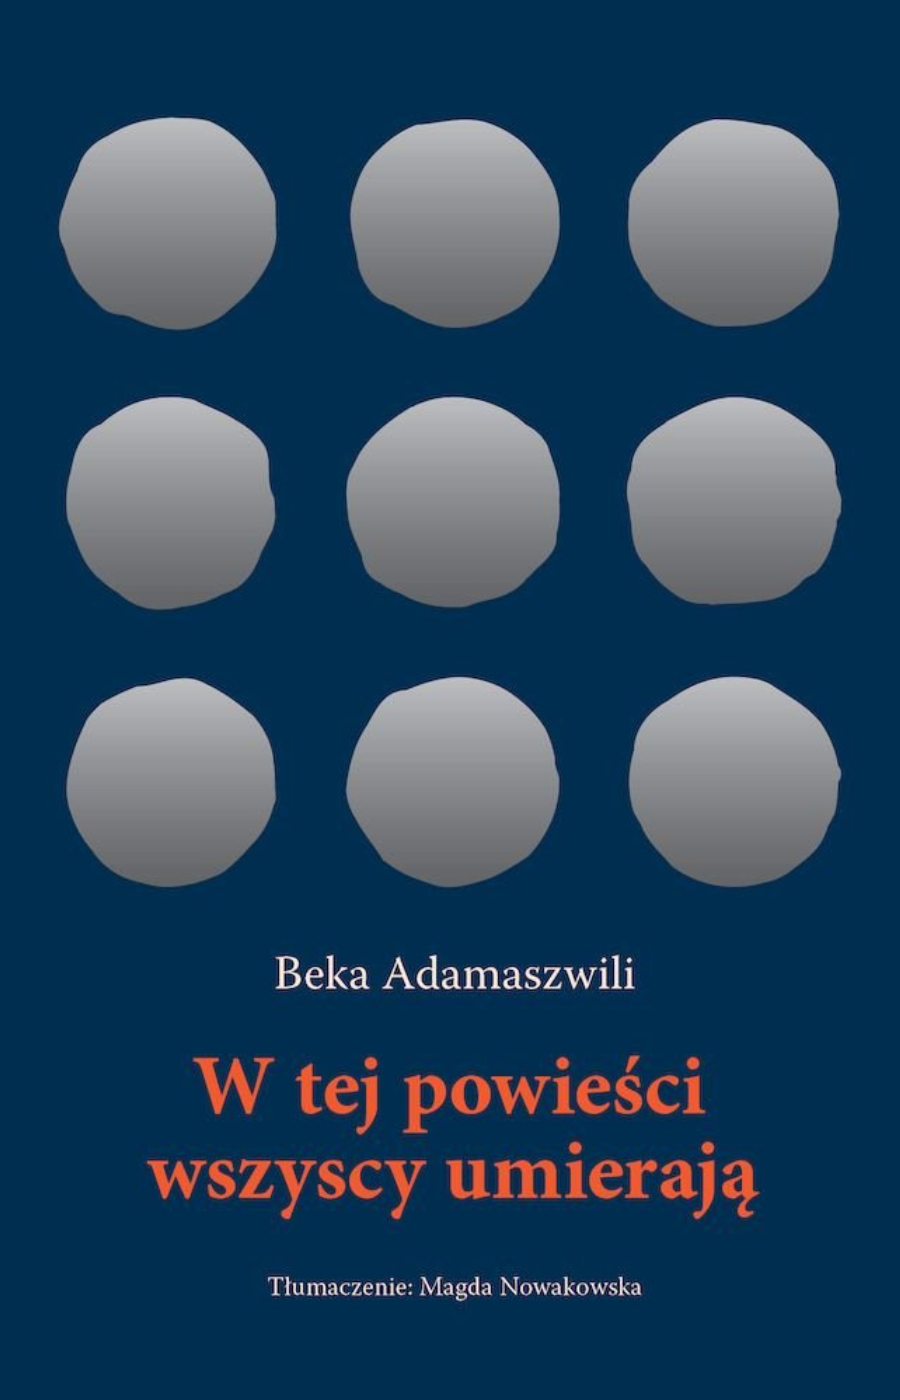 „W tej powieści wszyscy umierają”, Beka Adamaszwili, tłum. Magda Nowakowska, wyd. Widnokrąg